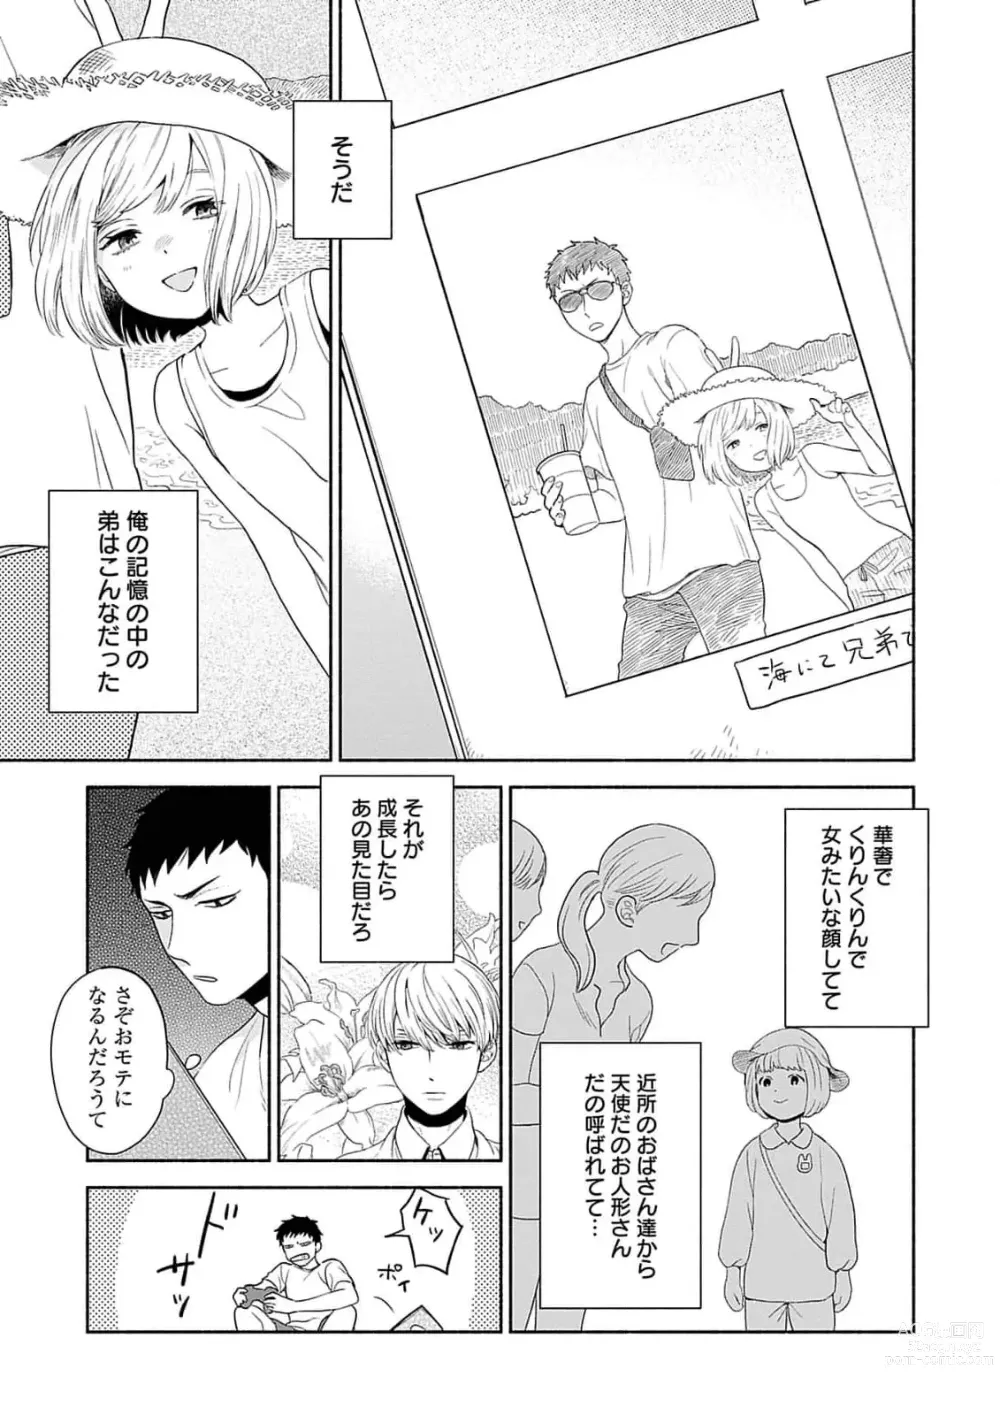 Page 9 of manga Yoru no Kyoudai